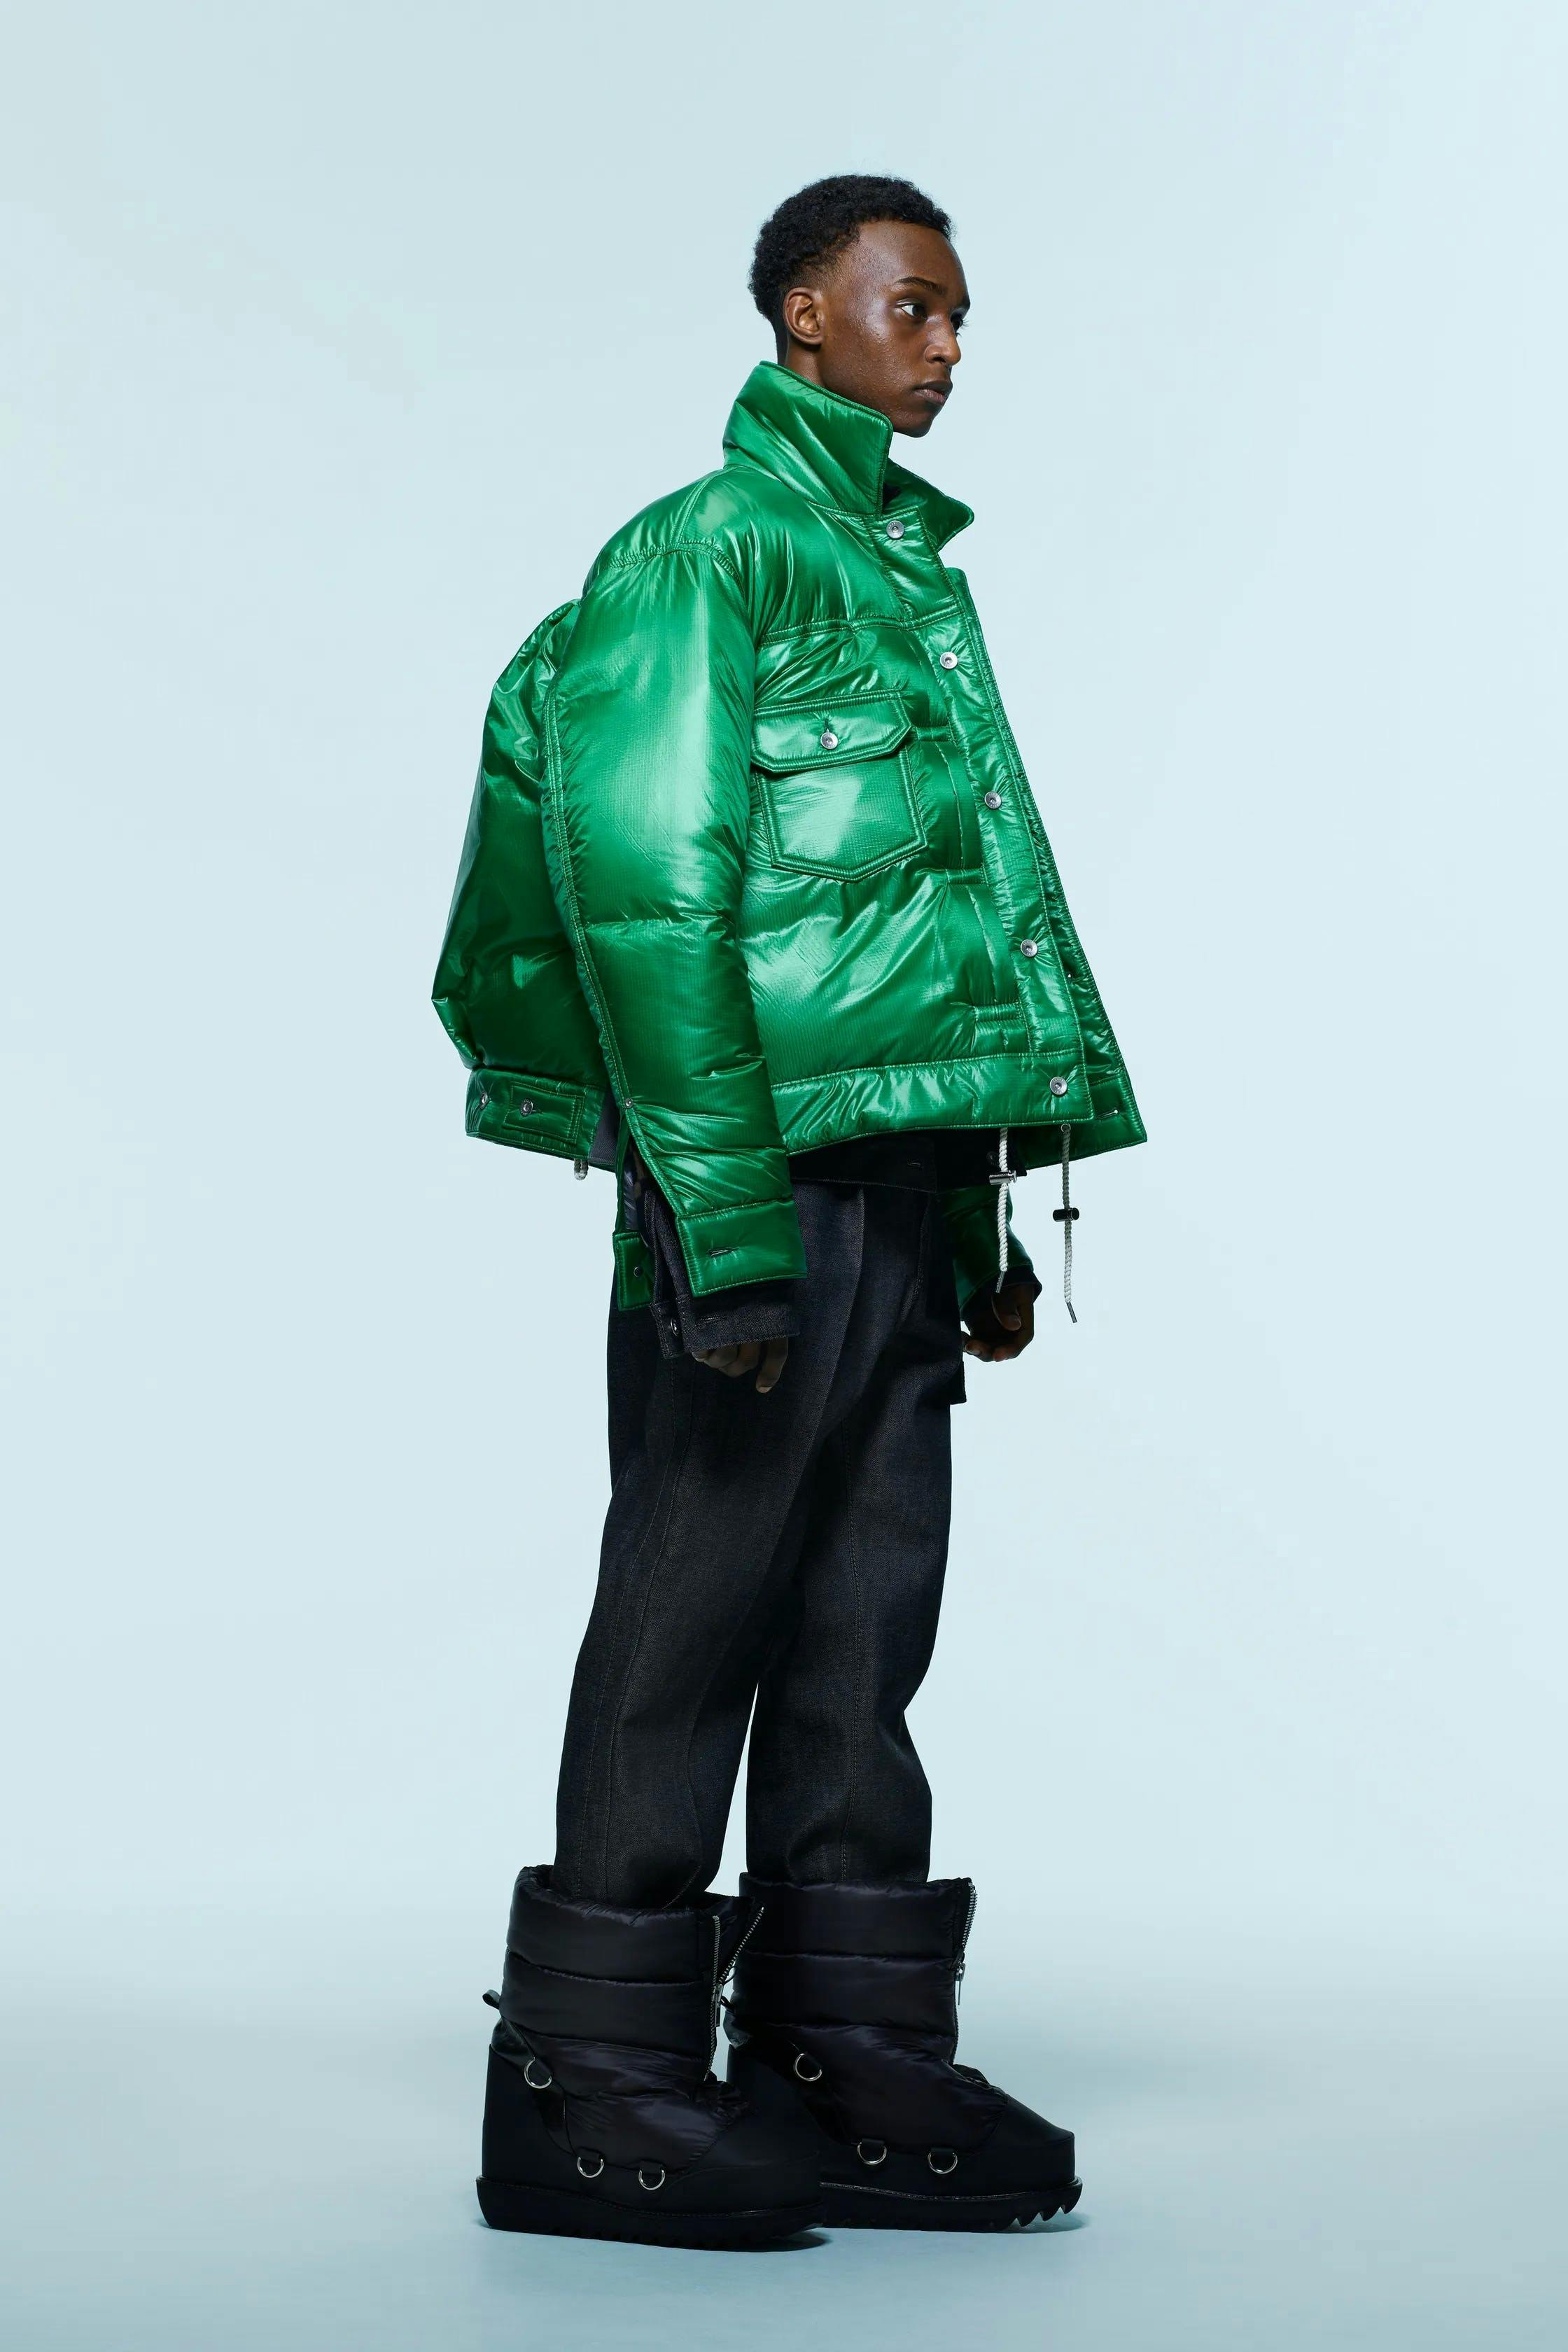 clothing apparel coat person human raincoat